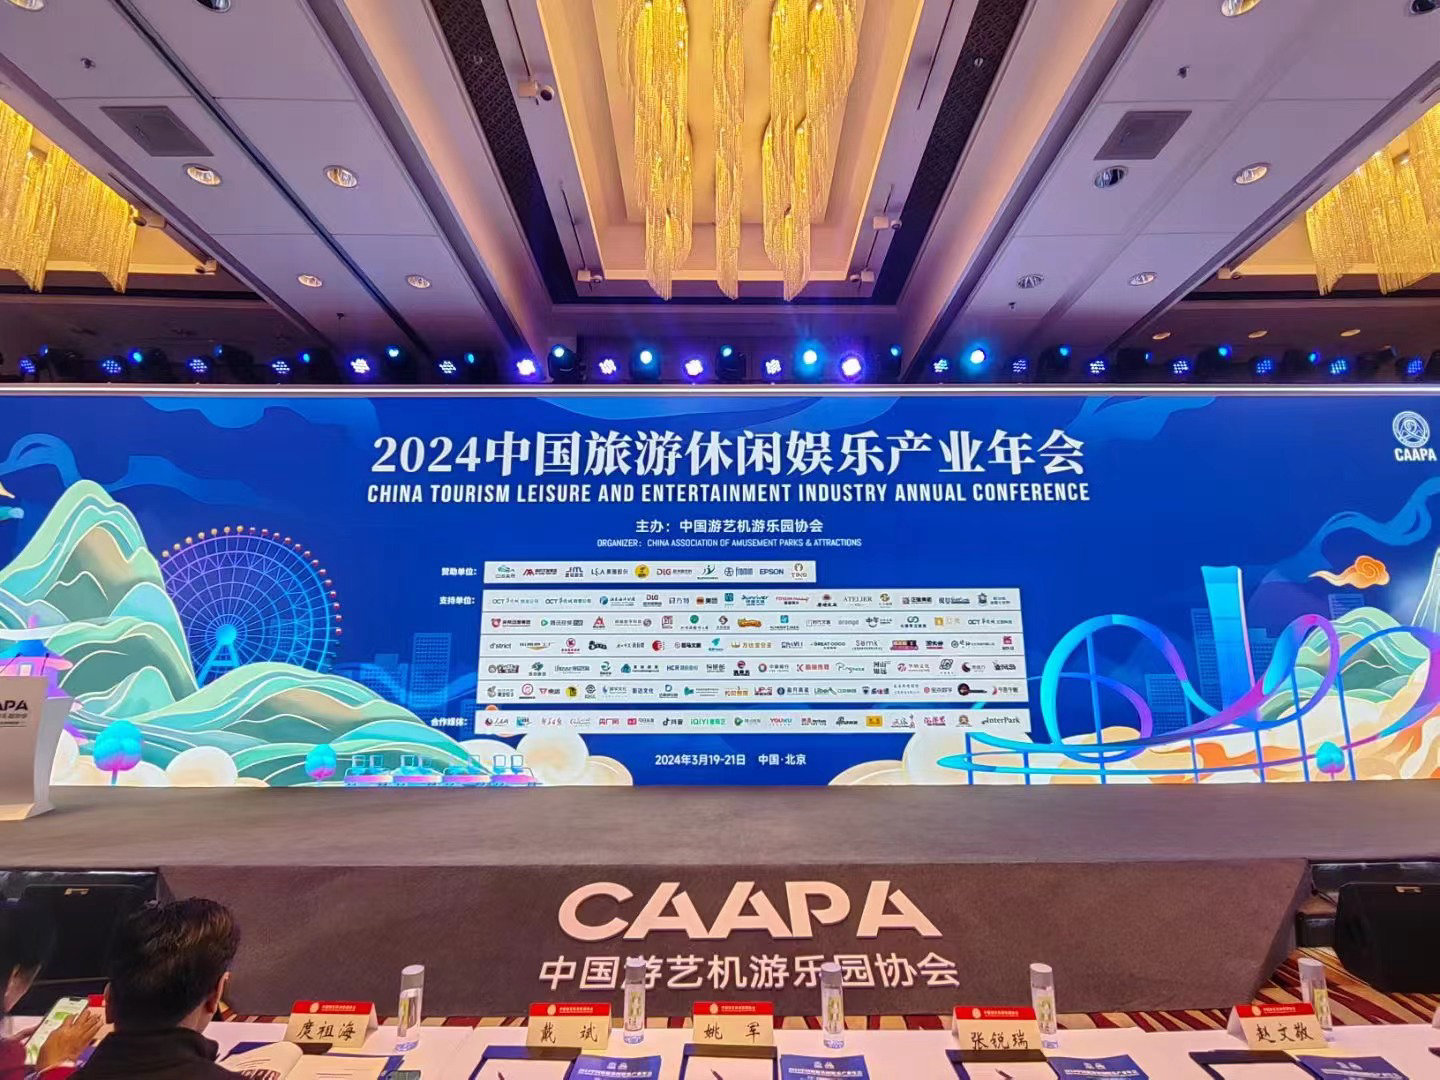 CAAPA2024中国旅游休闲娱乐产业年会开幕了